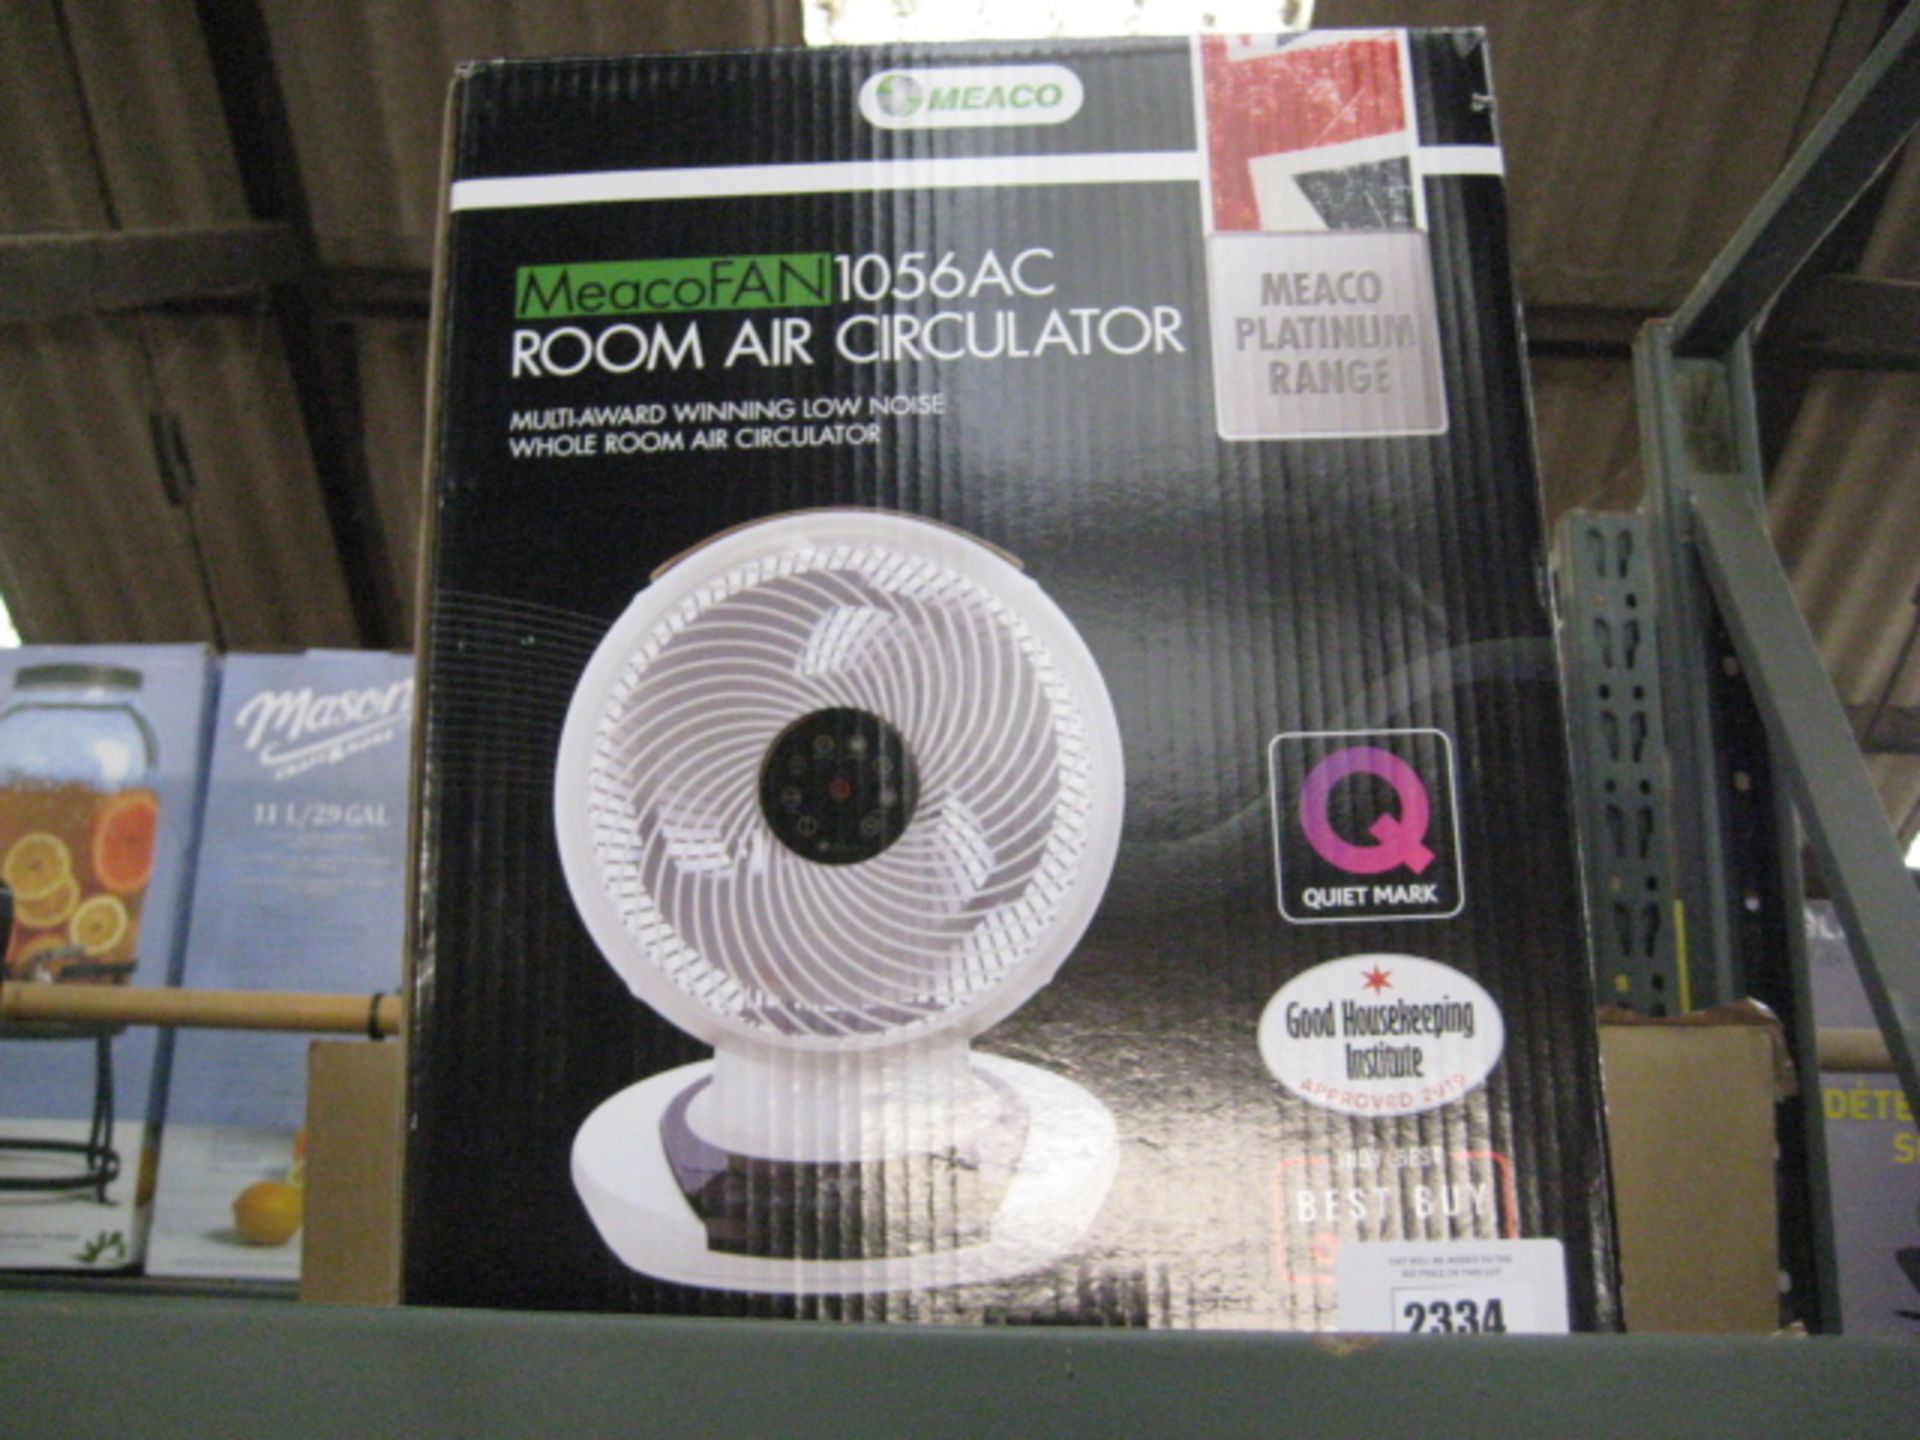 Meaco fan 1056 AC room air circulator